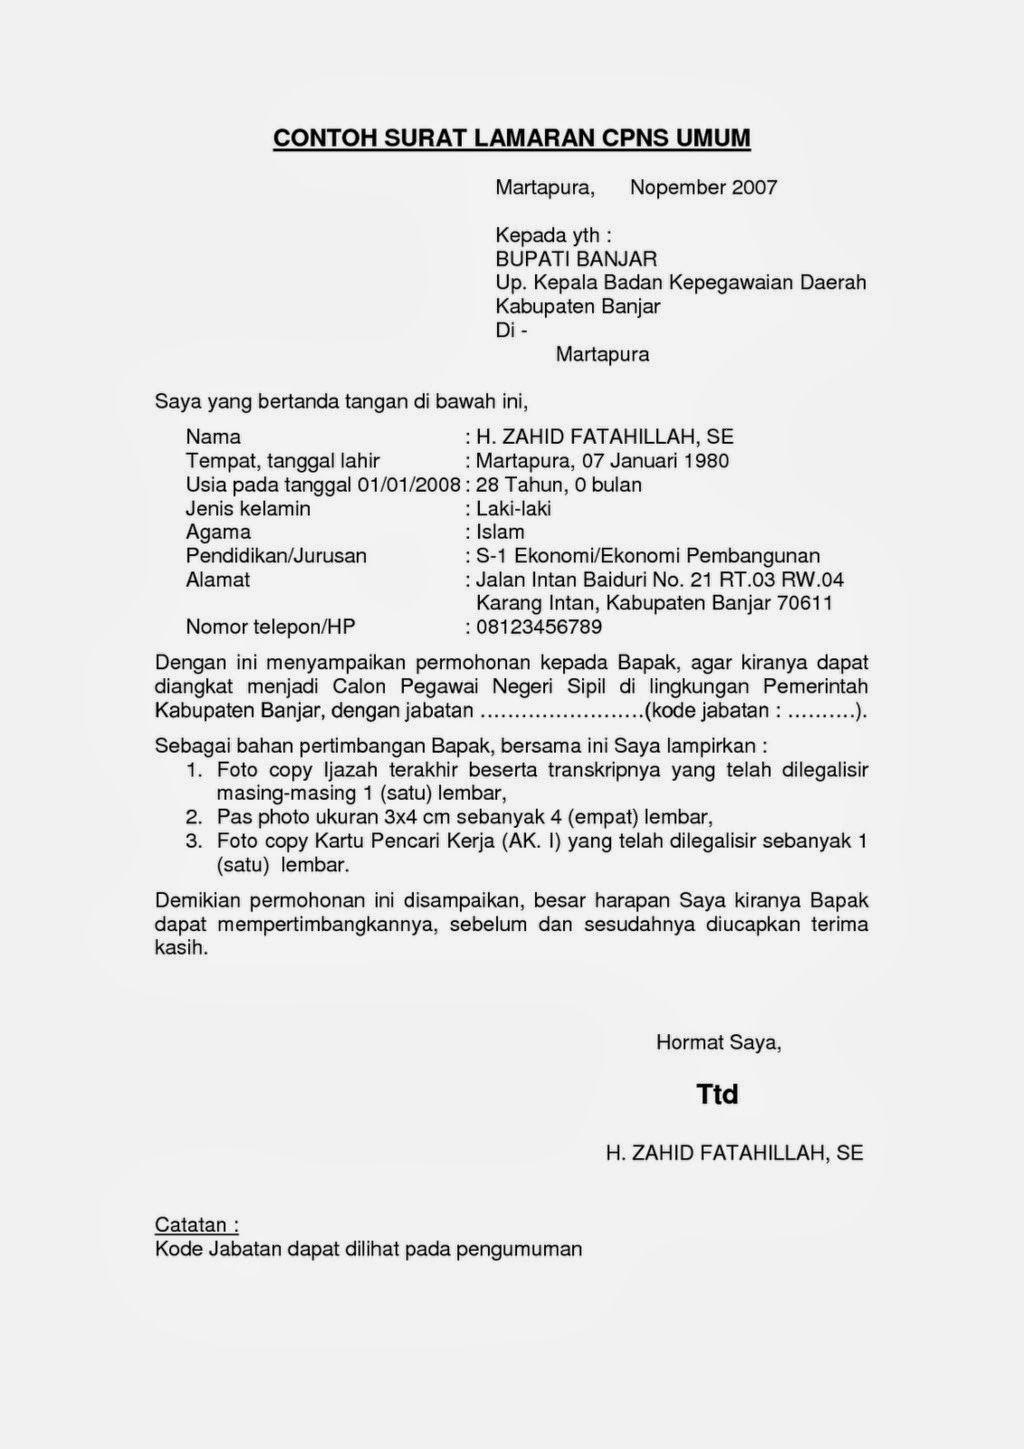 Contoh Surat Lamaran Cpns Untuk Bupati Bandung